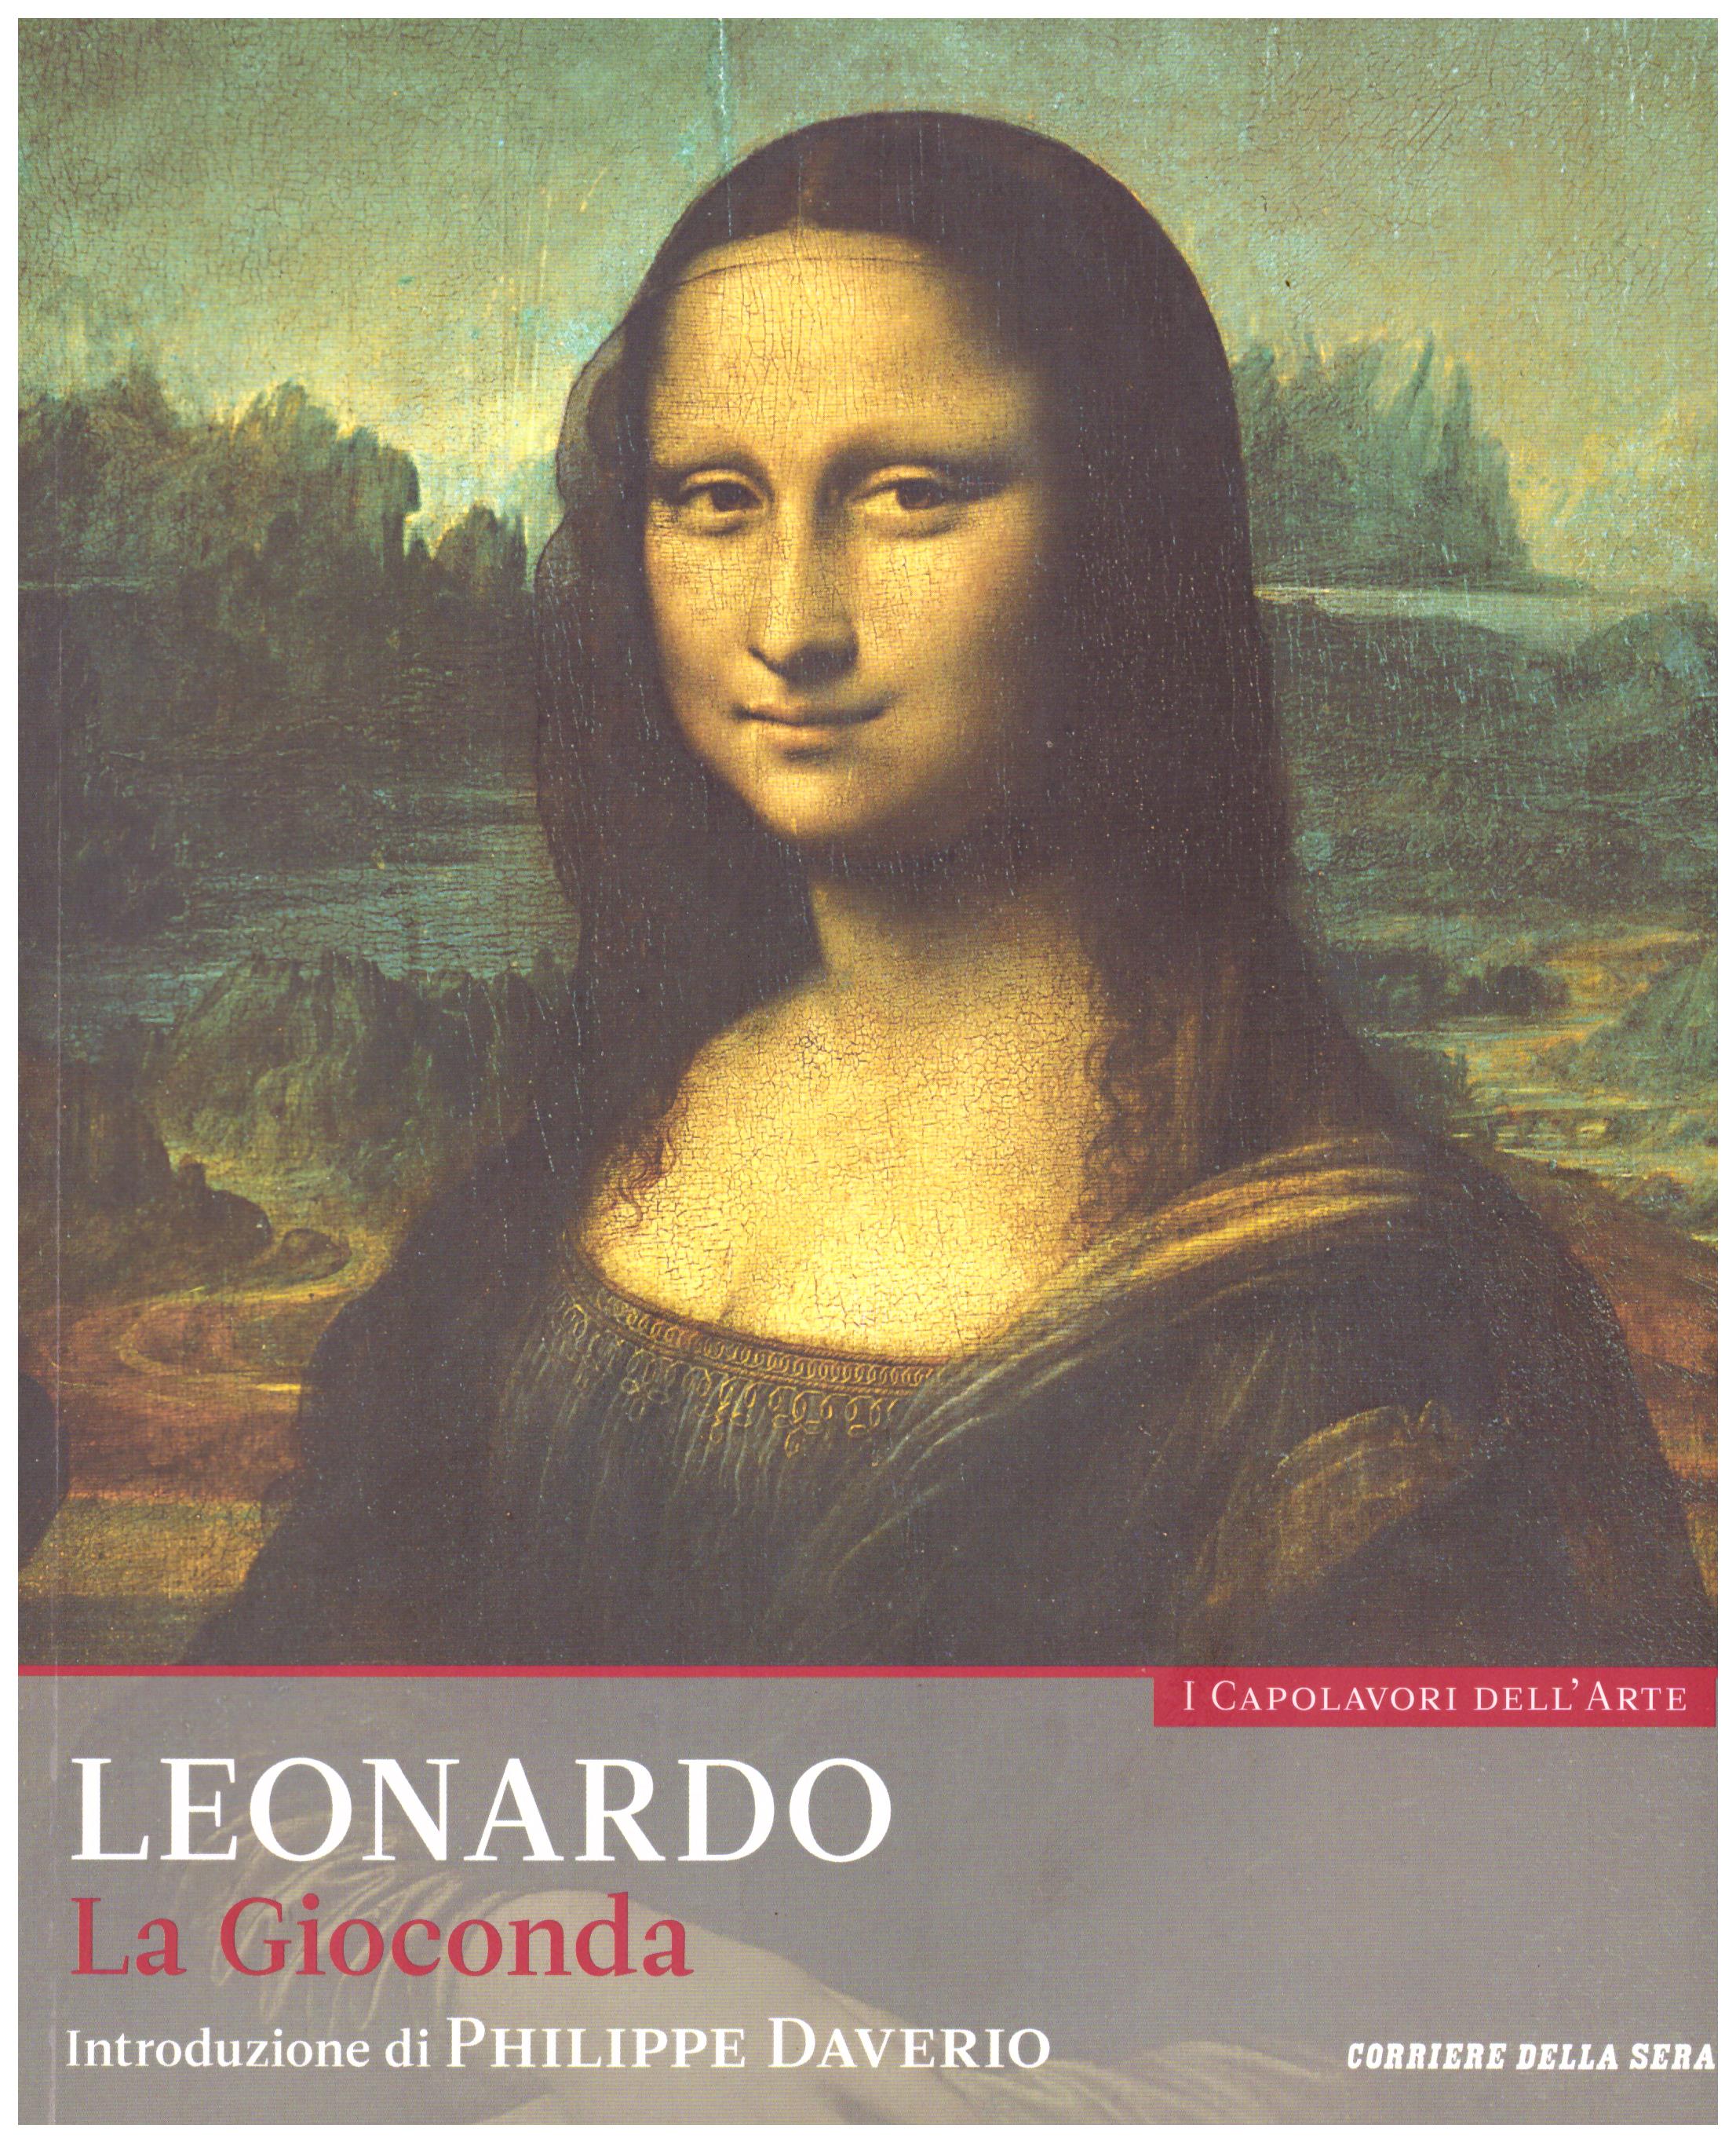 Titolo: I capolavori dell'arte, Leonardo  n.10 Autore : AA.VV.   Editore: education,it/corriere della sera, 2015